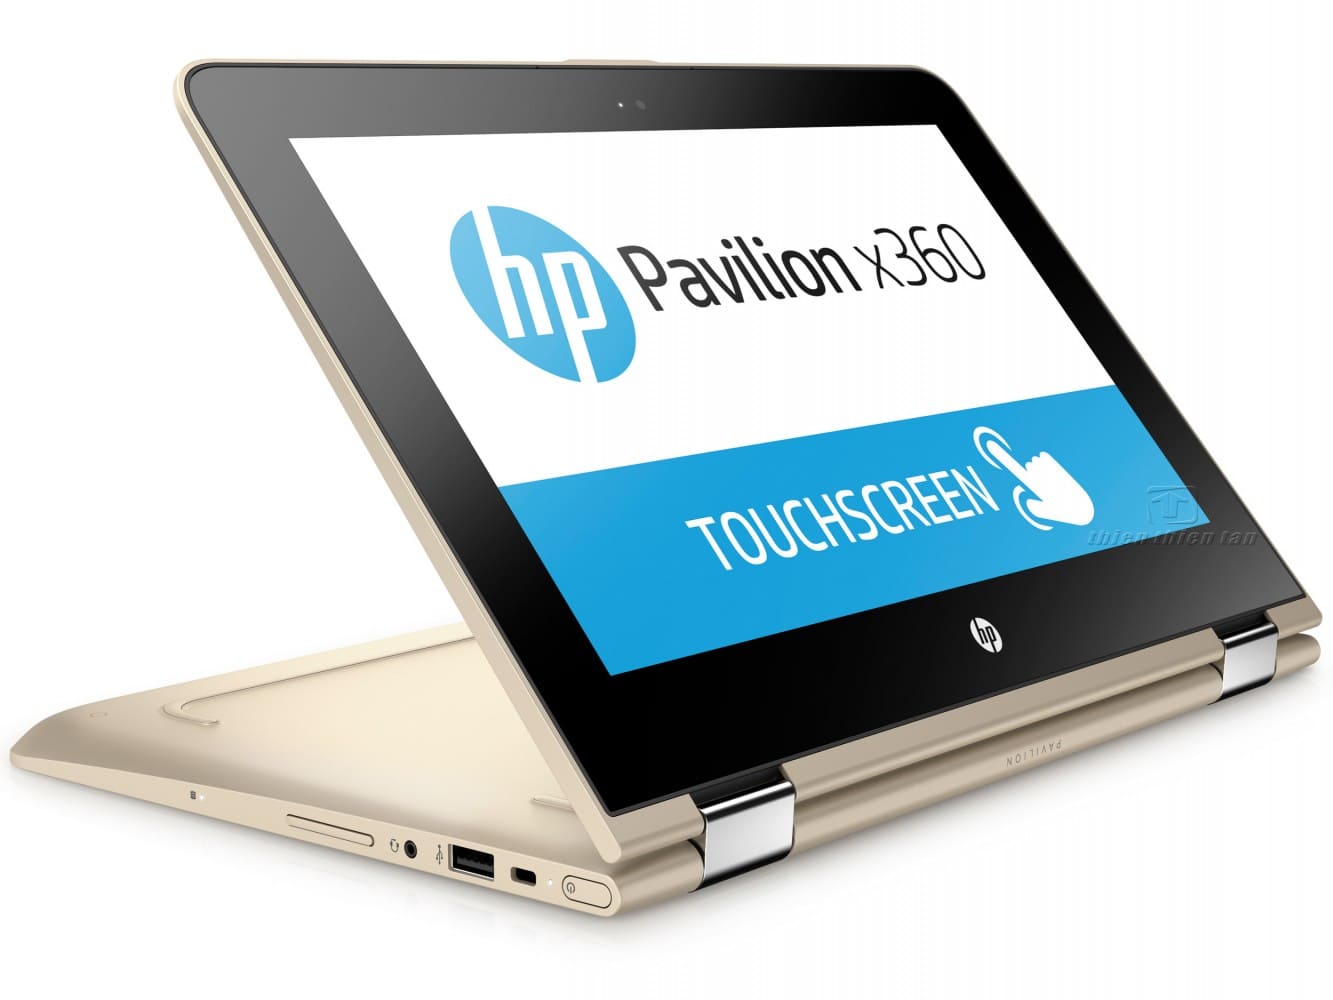 Đánh giá HP Pavilion x360 13-u108TU Y4G05PA: laptop hiệu năng cao, thiết kế xoay gập sang trọng, tiện dụng